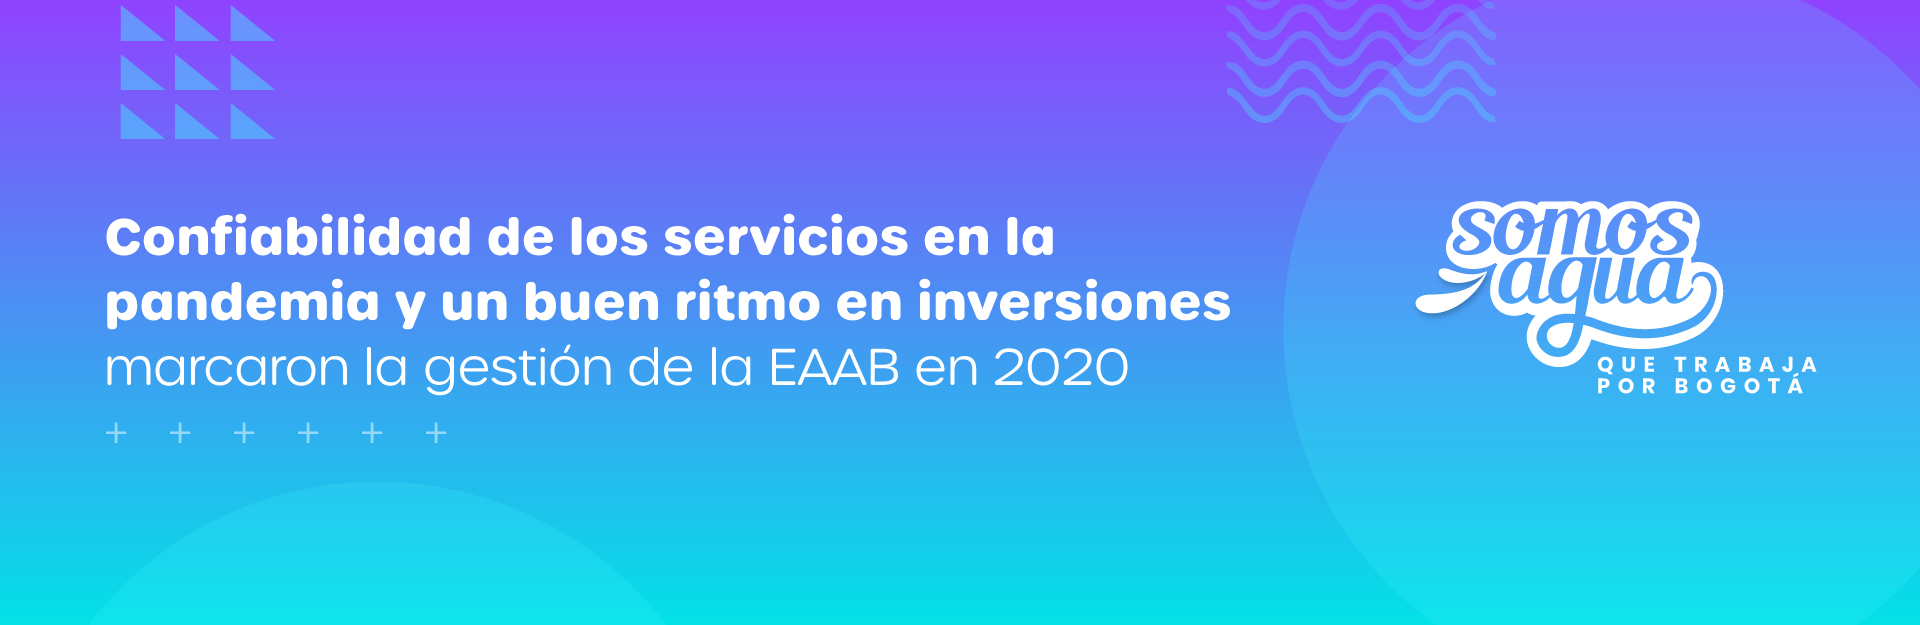 Confiabilidad de los servicios en la pandemia y un buen ritmo en inversiones marcaron la gestión de la EAAB en 2020